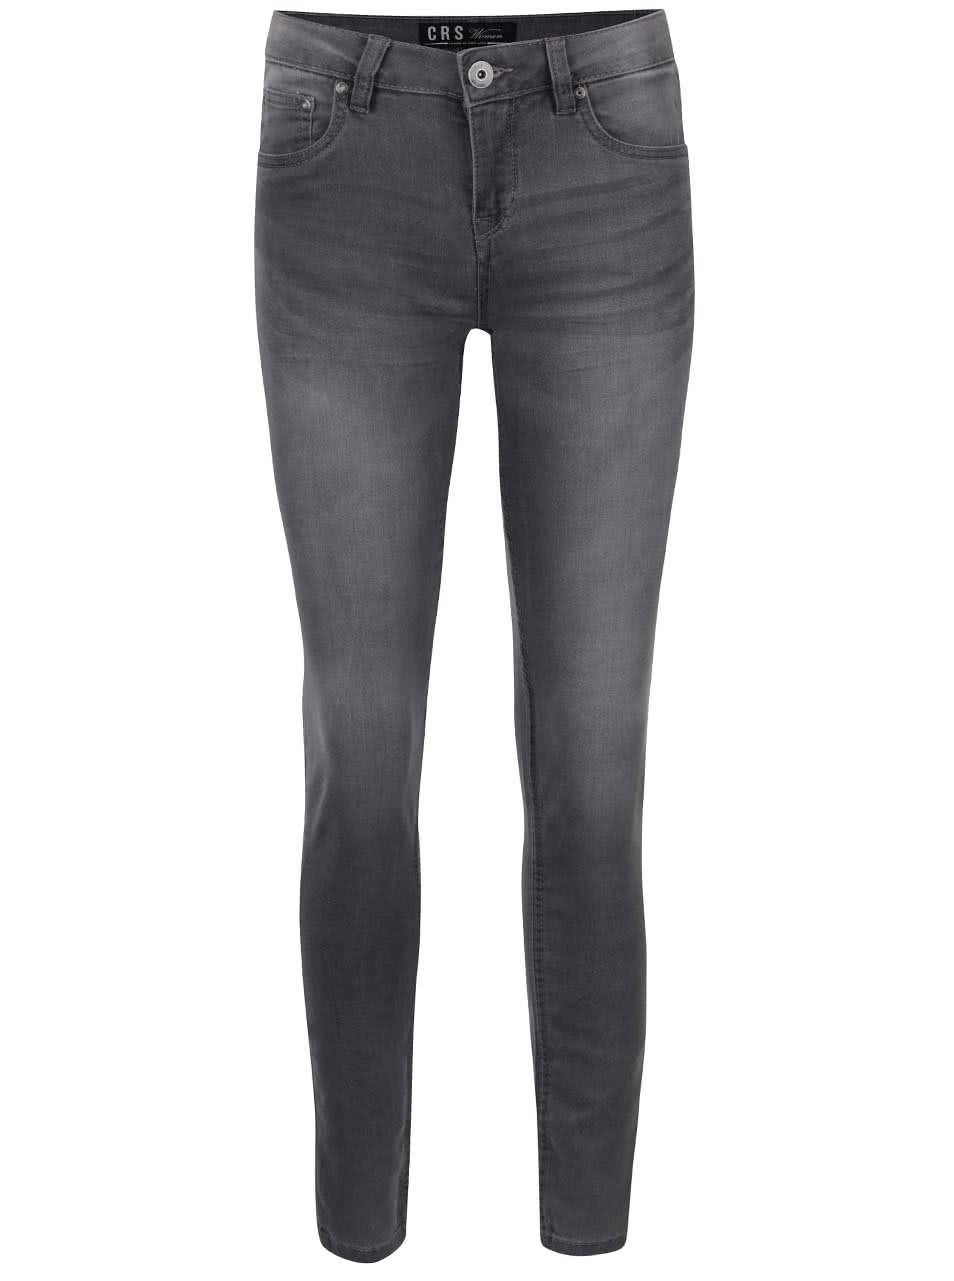 Světle šedé dámské skinny džíny s vyšisovaným efektem Cars Tyra